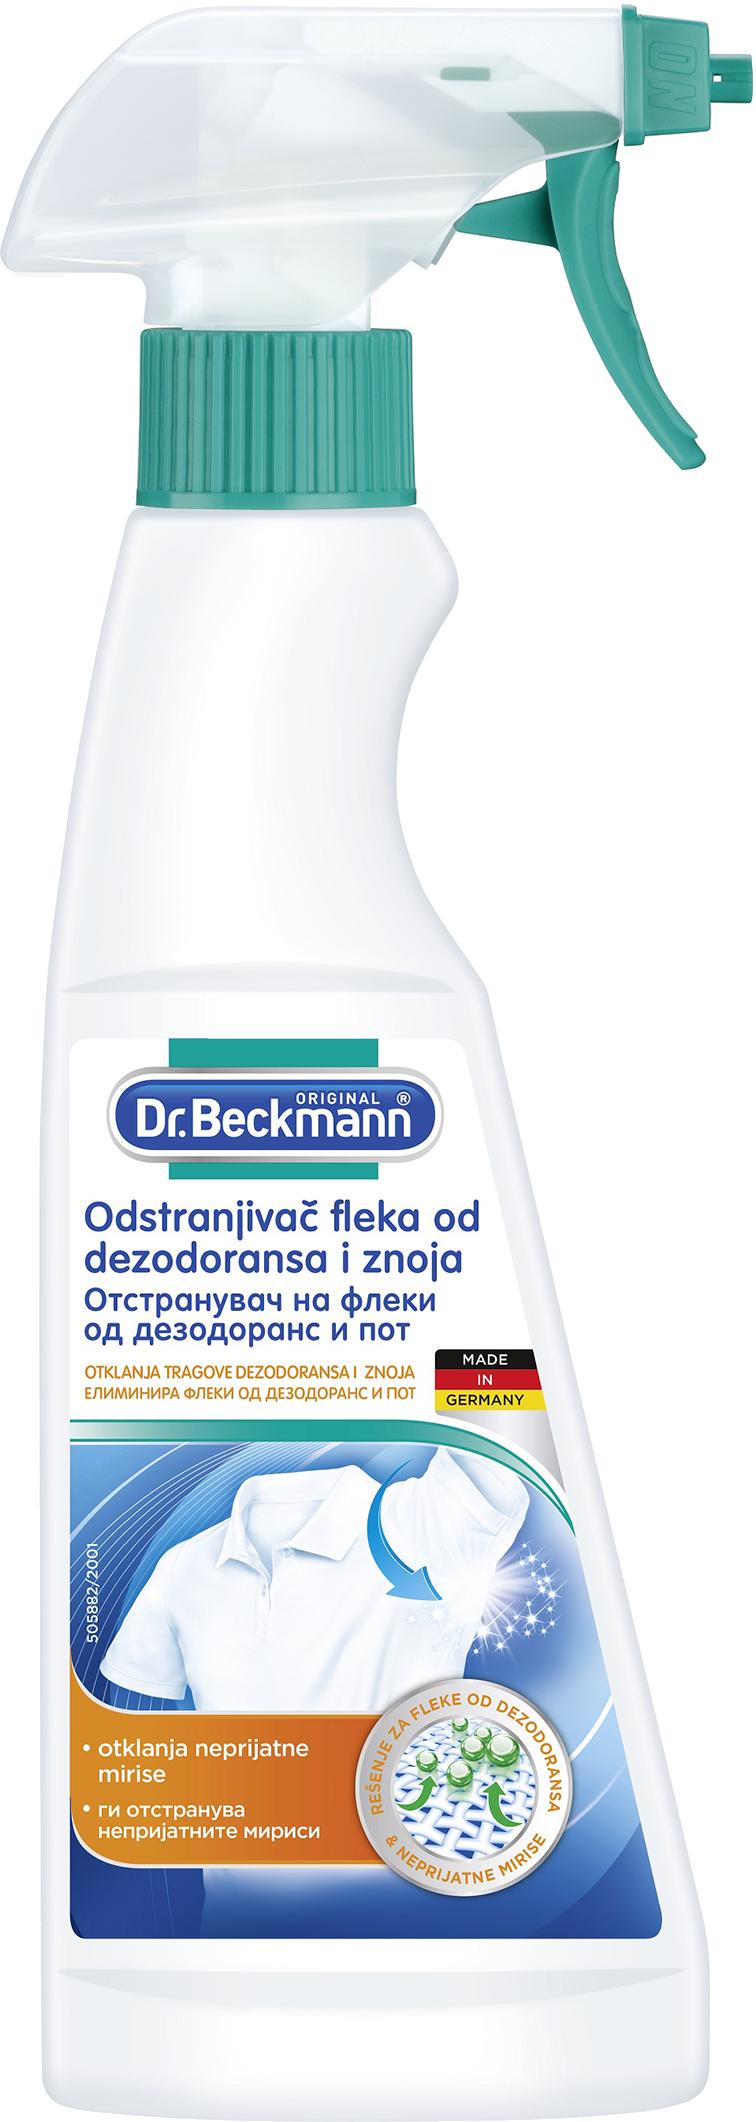 Slika za Odstranjivač fleka od dezodoransa i znoja Dr.Beckmann 250ml